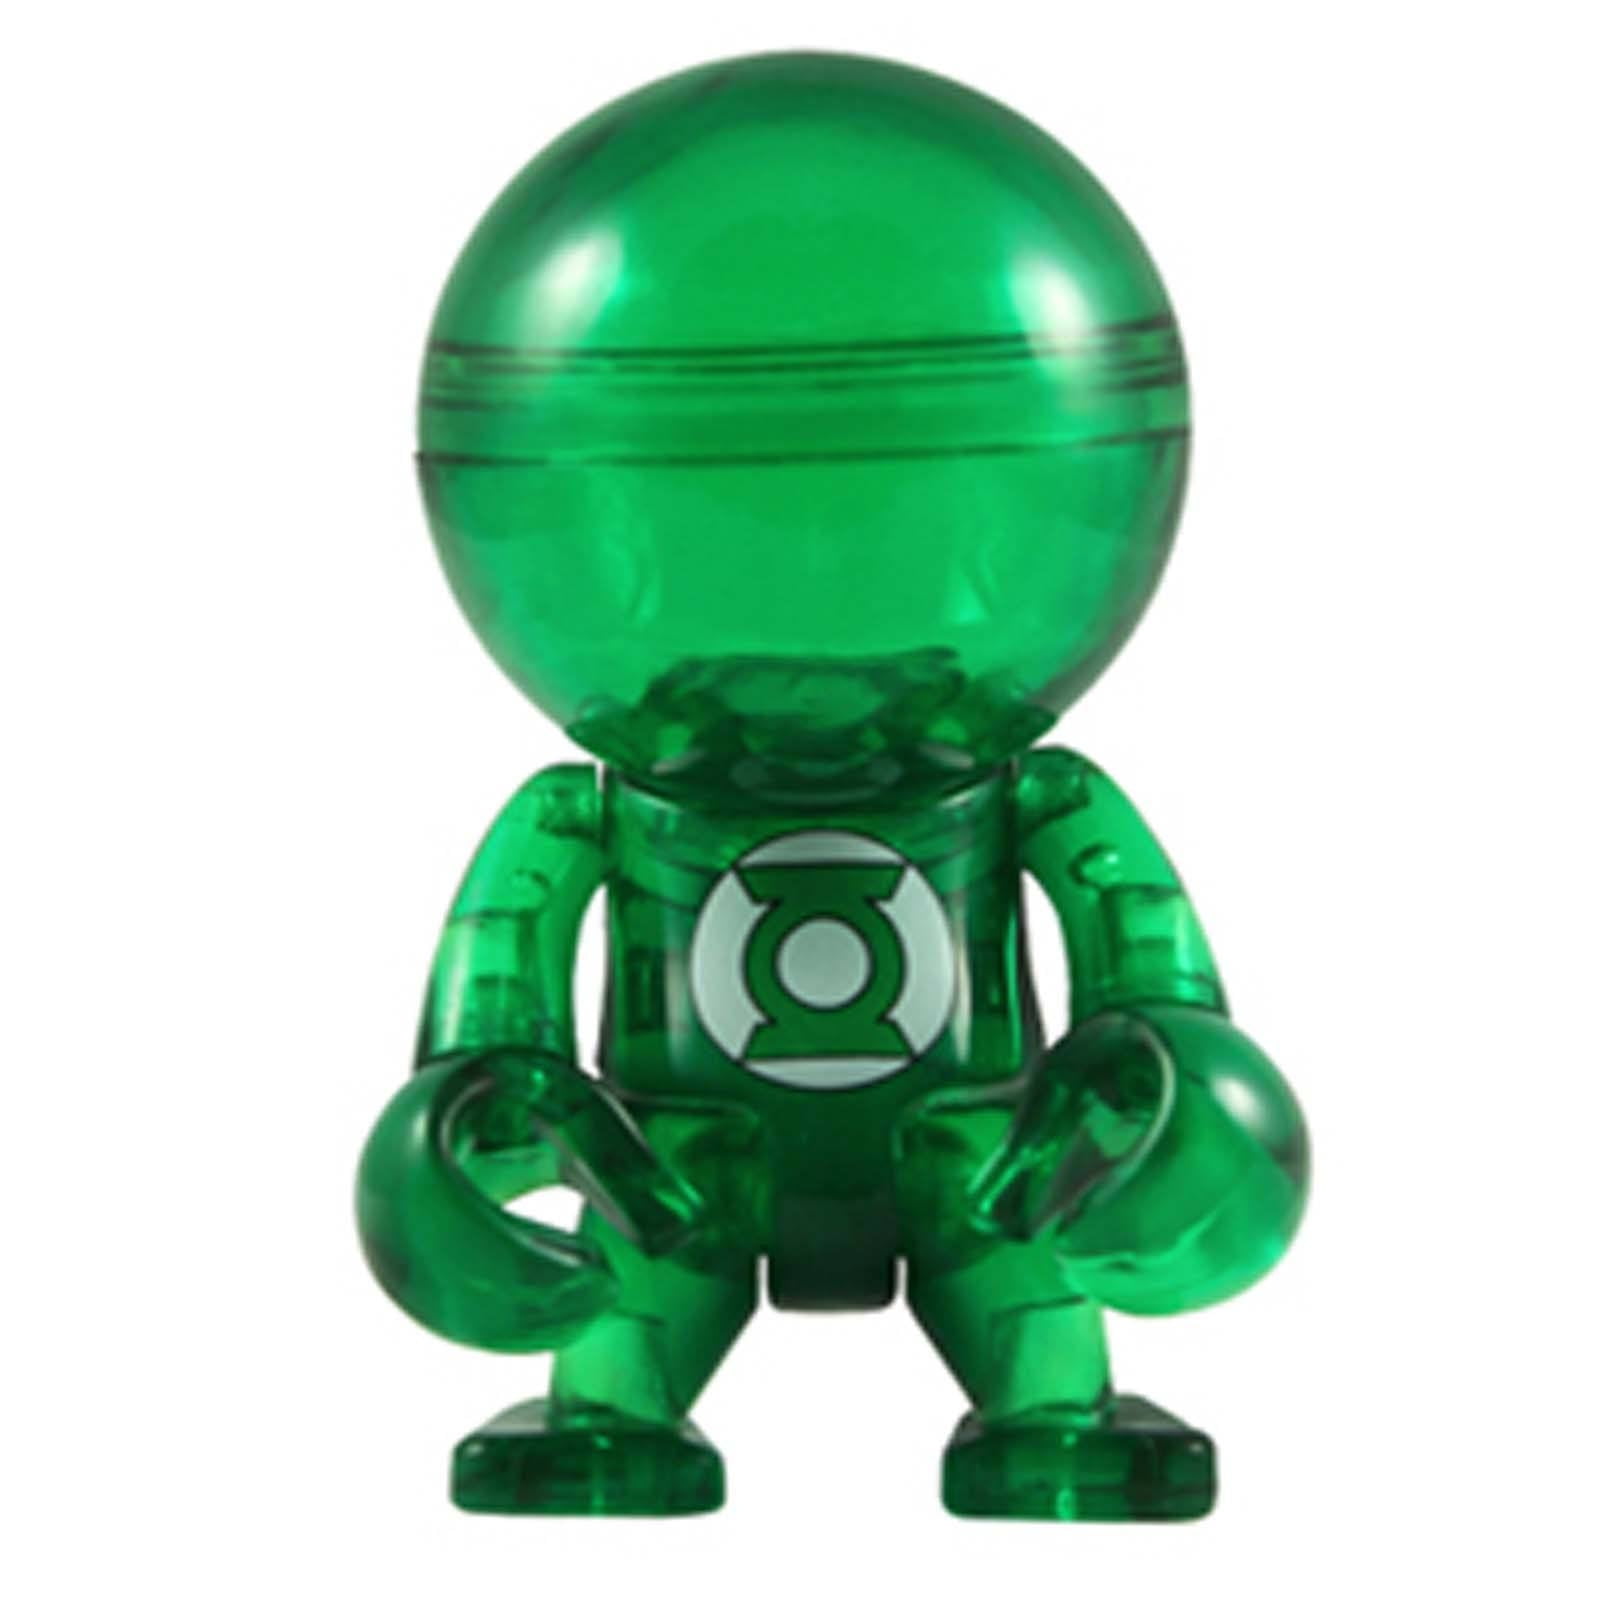 DC Justice League Green Lantern Logo Trexi Figure NOUVEAU Toys DC Comics 